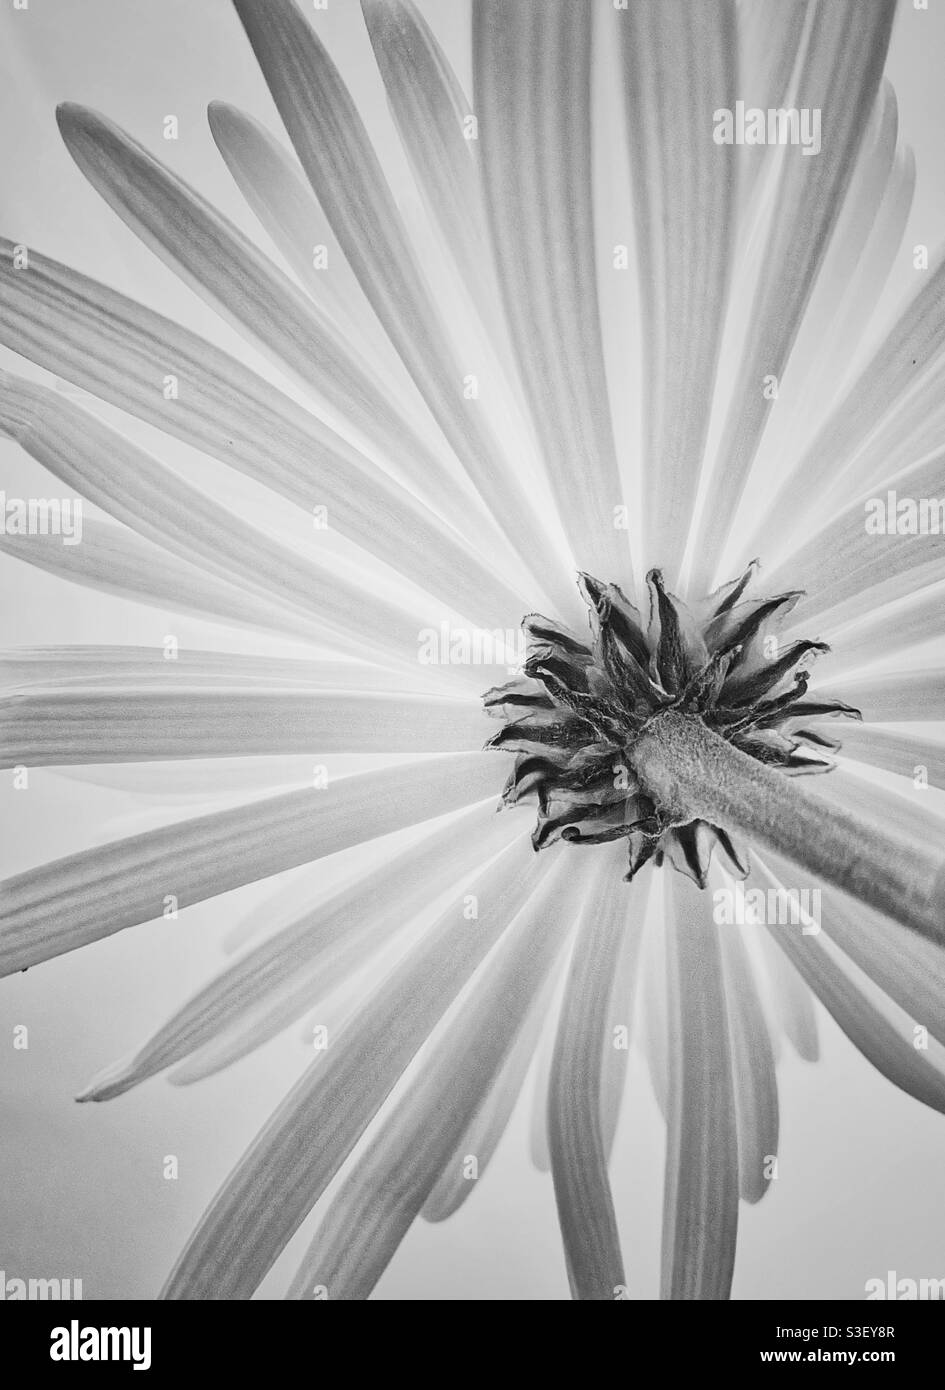 Una fotografia in bianco e nero della parte inferiore di una singola bella fioritura. Immagine classica e semplice, elegante Foto Stock